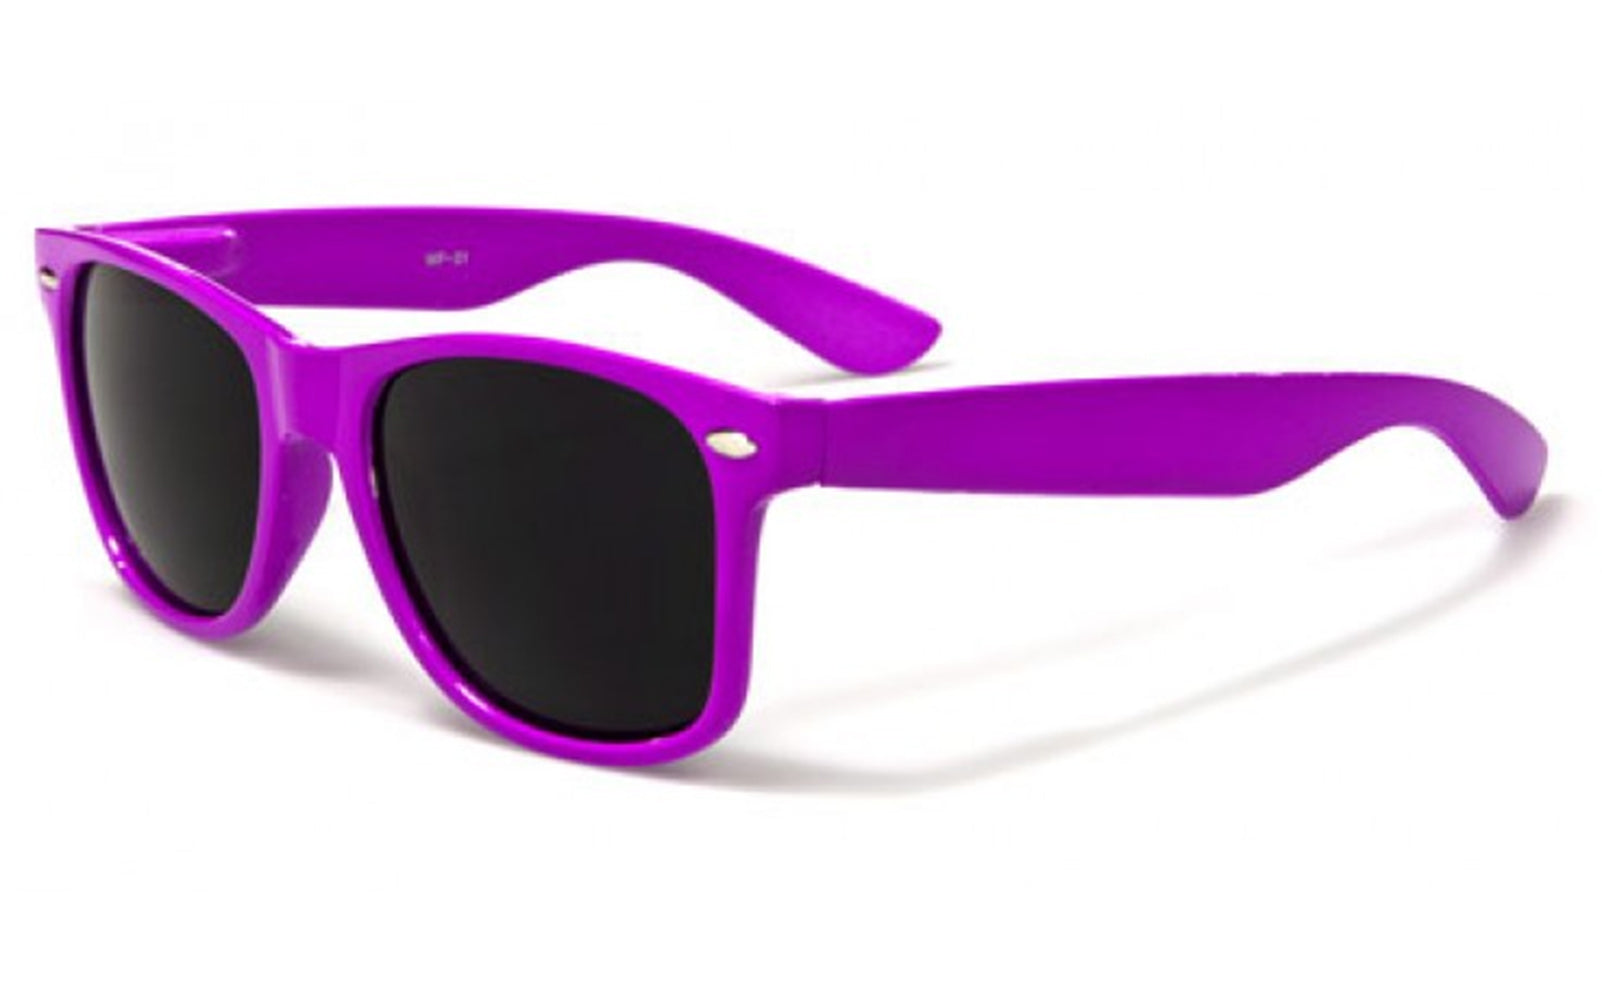 Vintage Wayfarer Sunglasses In Assorted Neon Colors Bewild